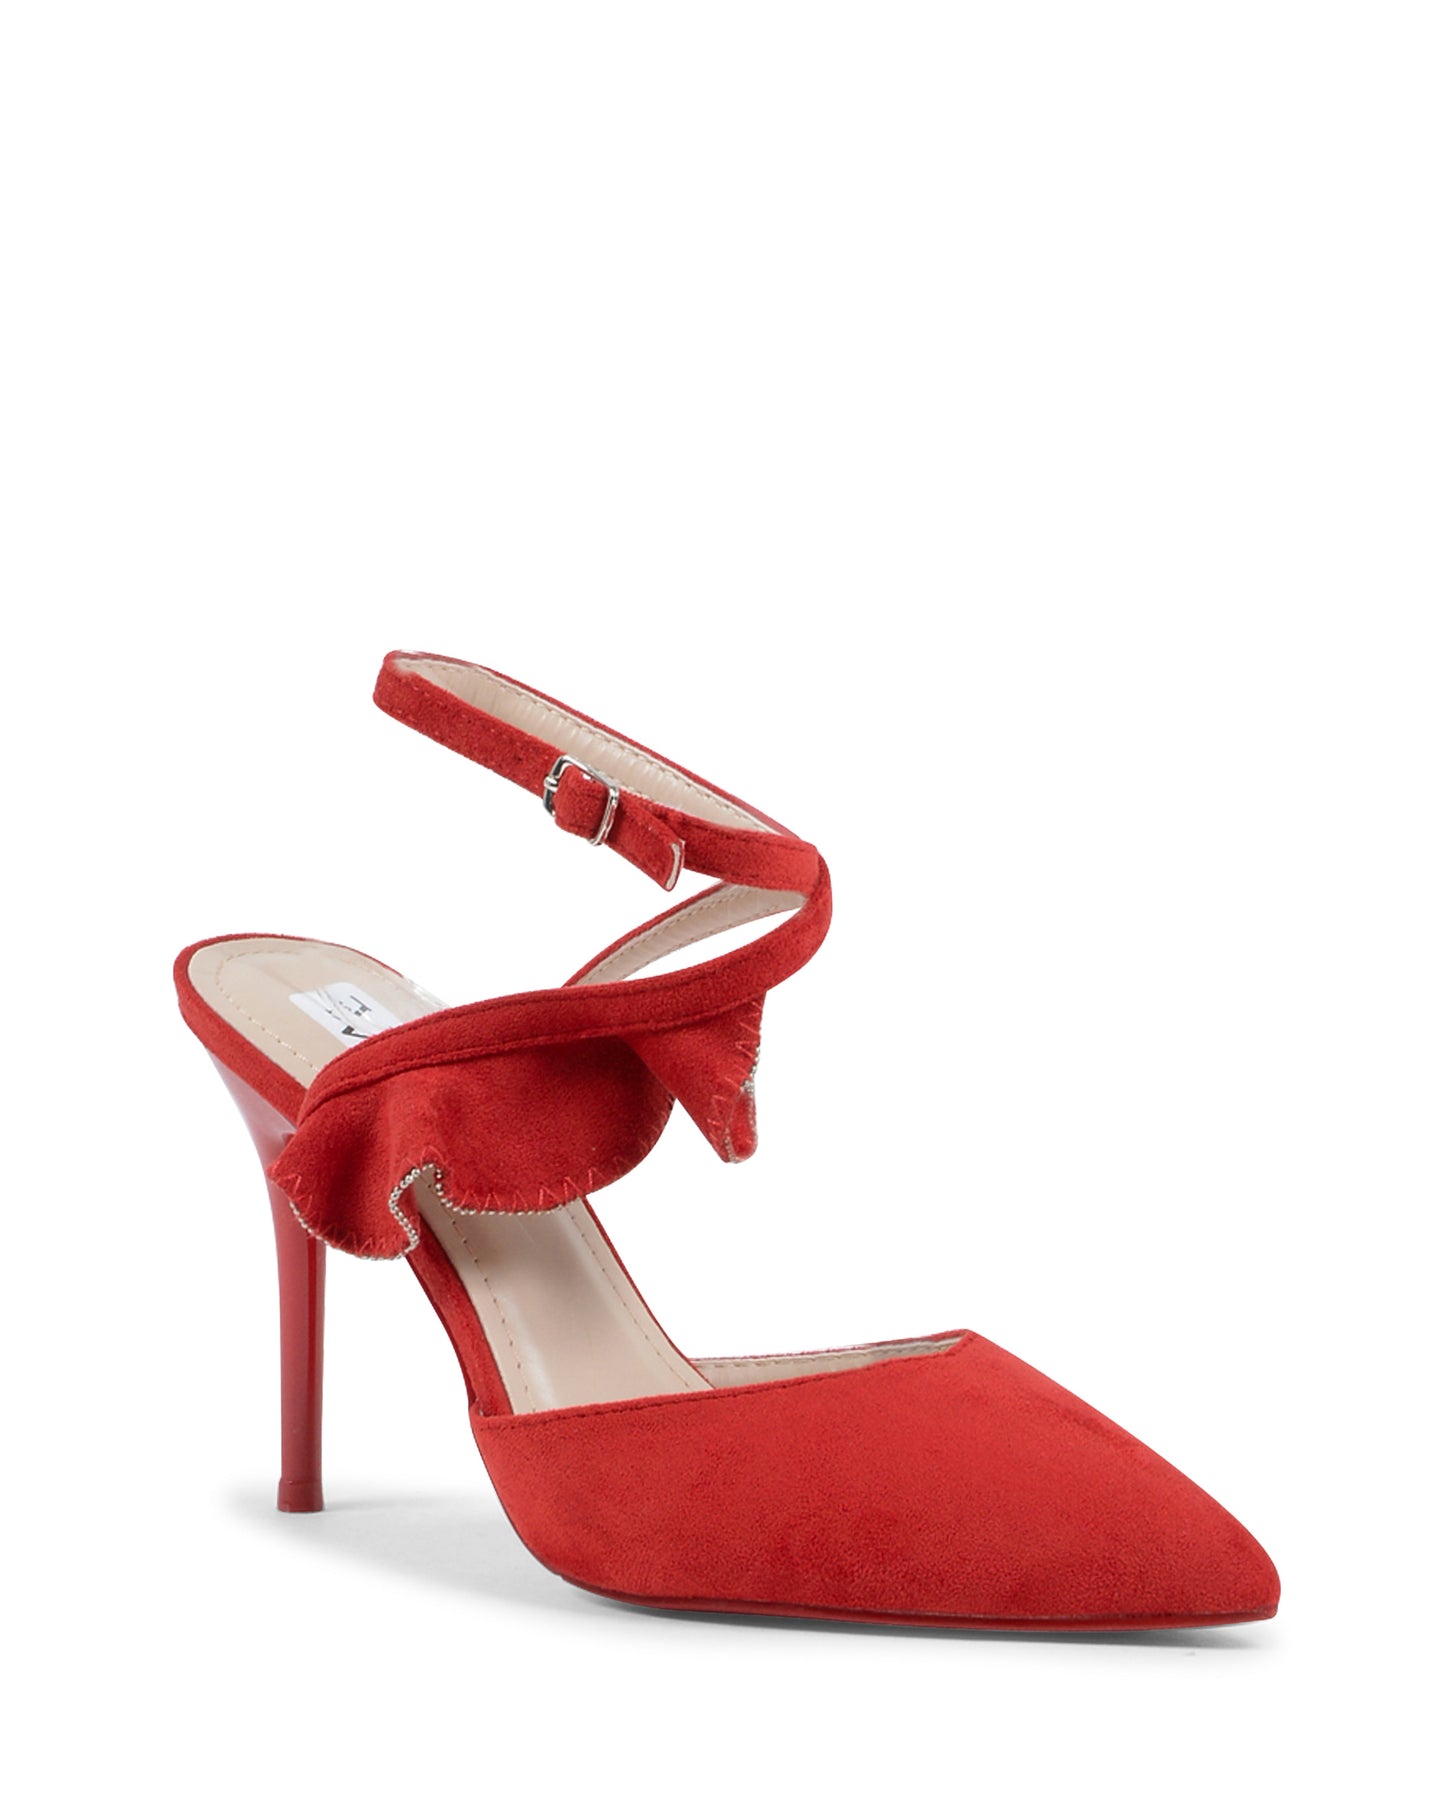 19V69 Italia Sandalo con cinturino alla caviglia da donna rosso V151 ROSSO